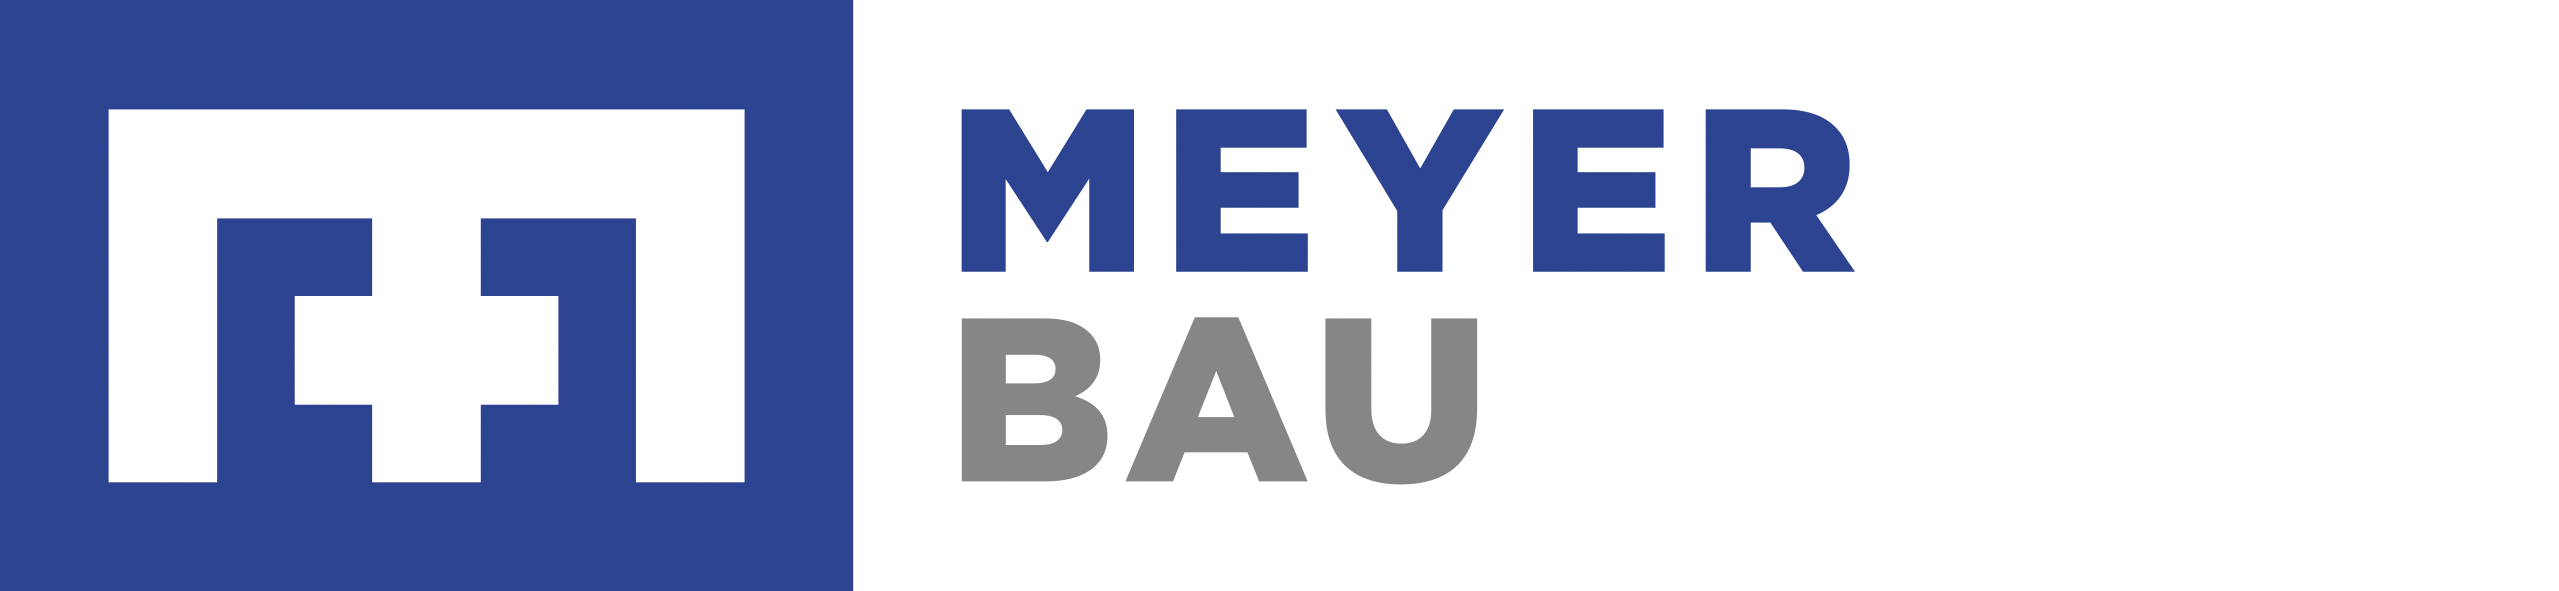 Meyer Bau